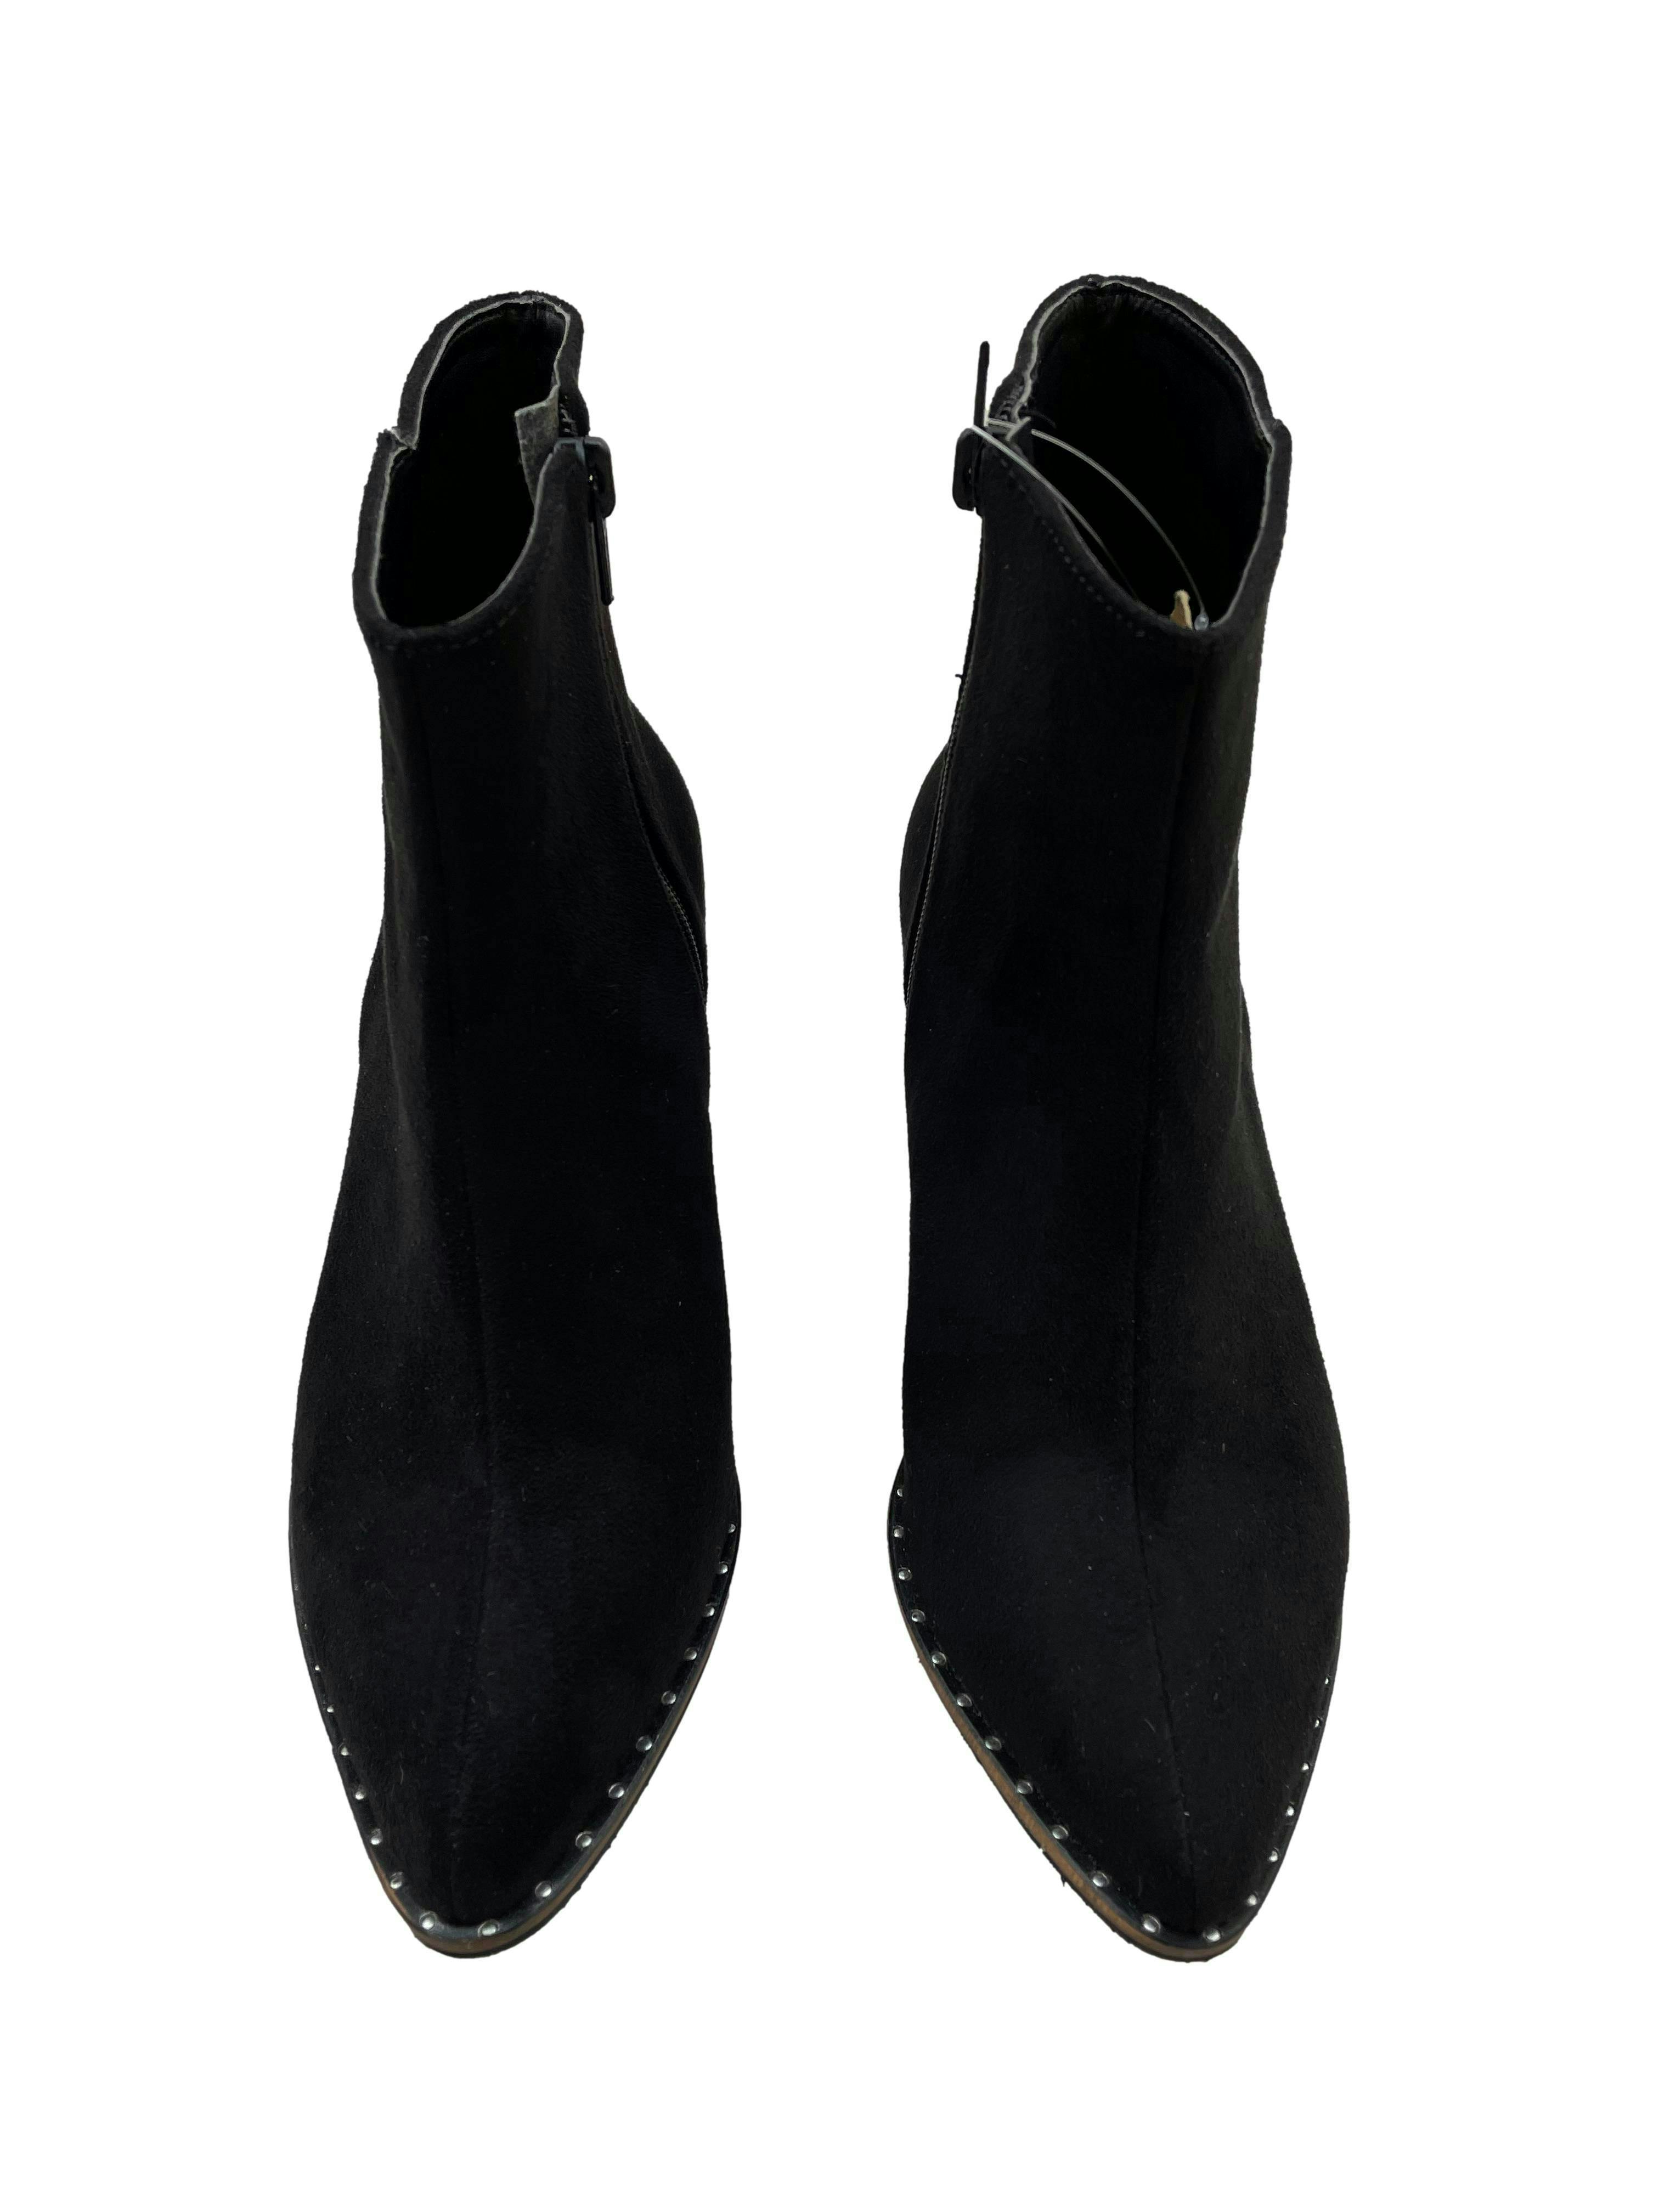 Botines negros Trendy Shoes de suede, modelo en punta con tachas metálicas. Estado 9/10.